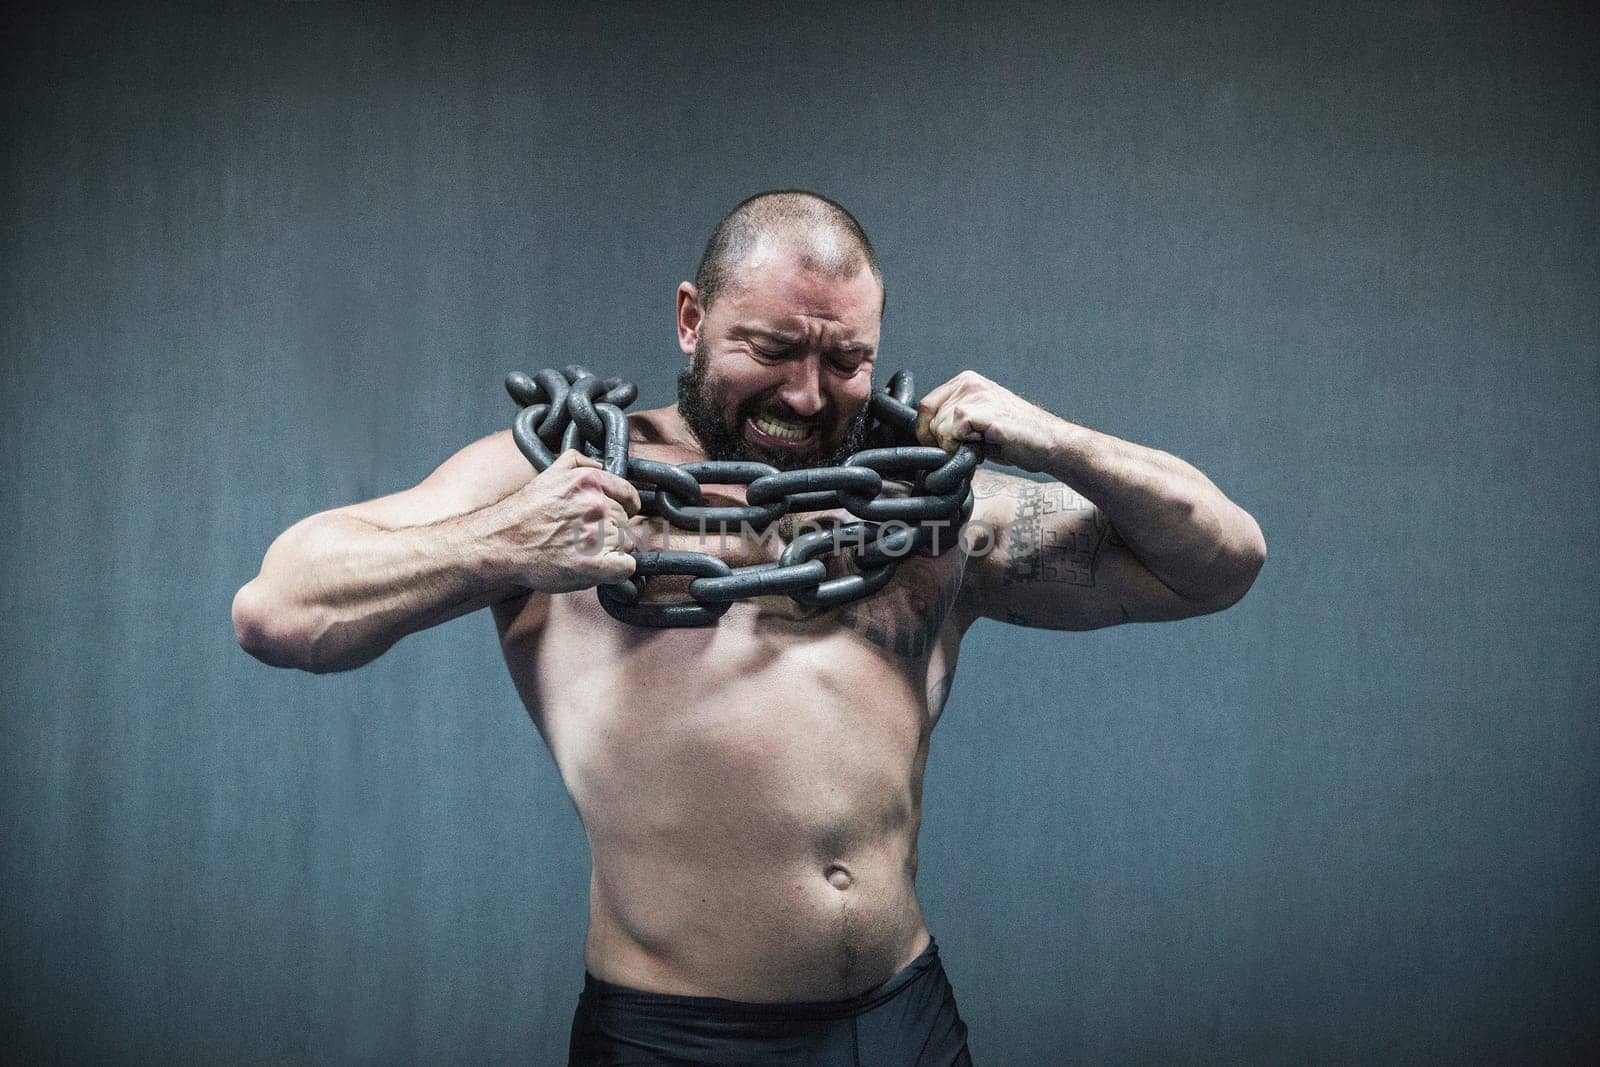 Bila Tserkva, Ukraine, October 15,2016: The athlete breaks the chain by Viktor_Osypenko